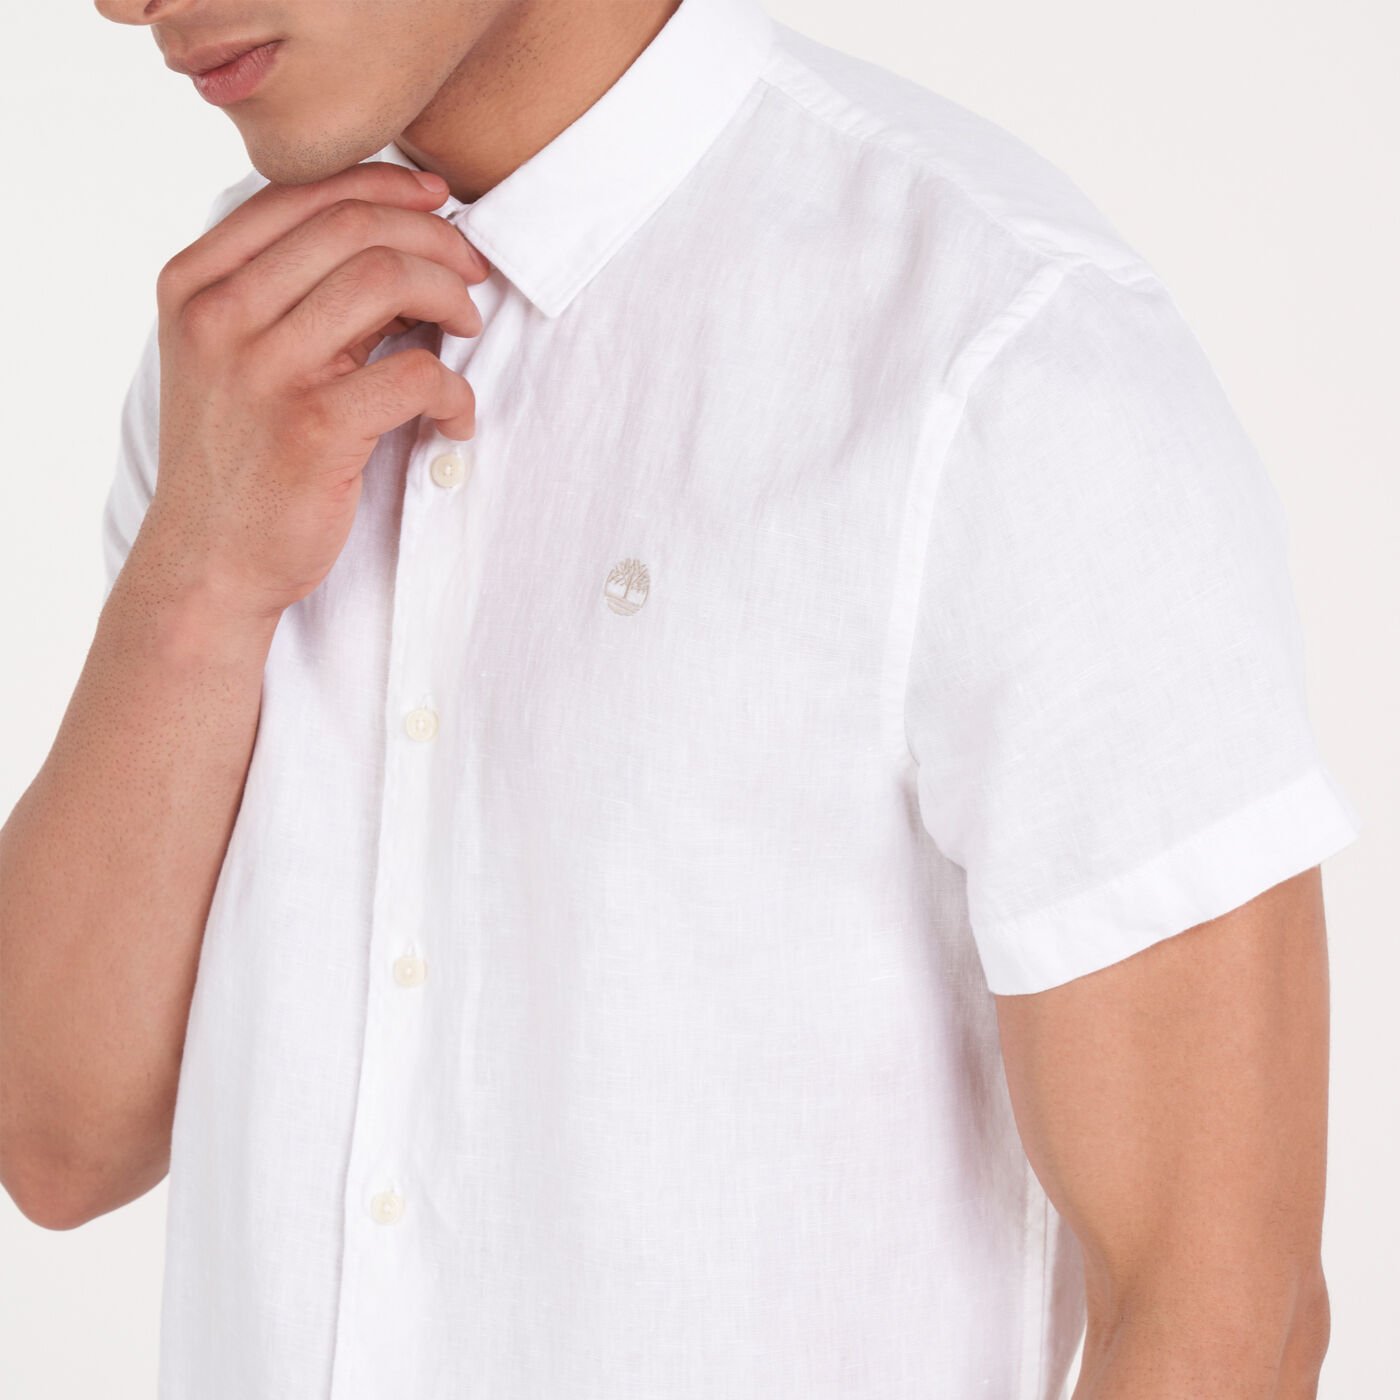 Men's Mill River Linen Shirt